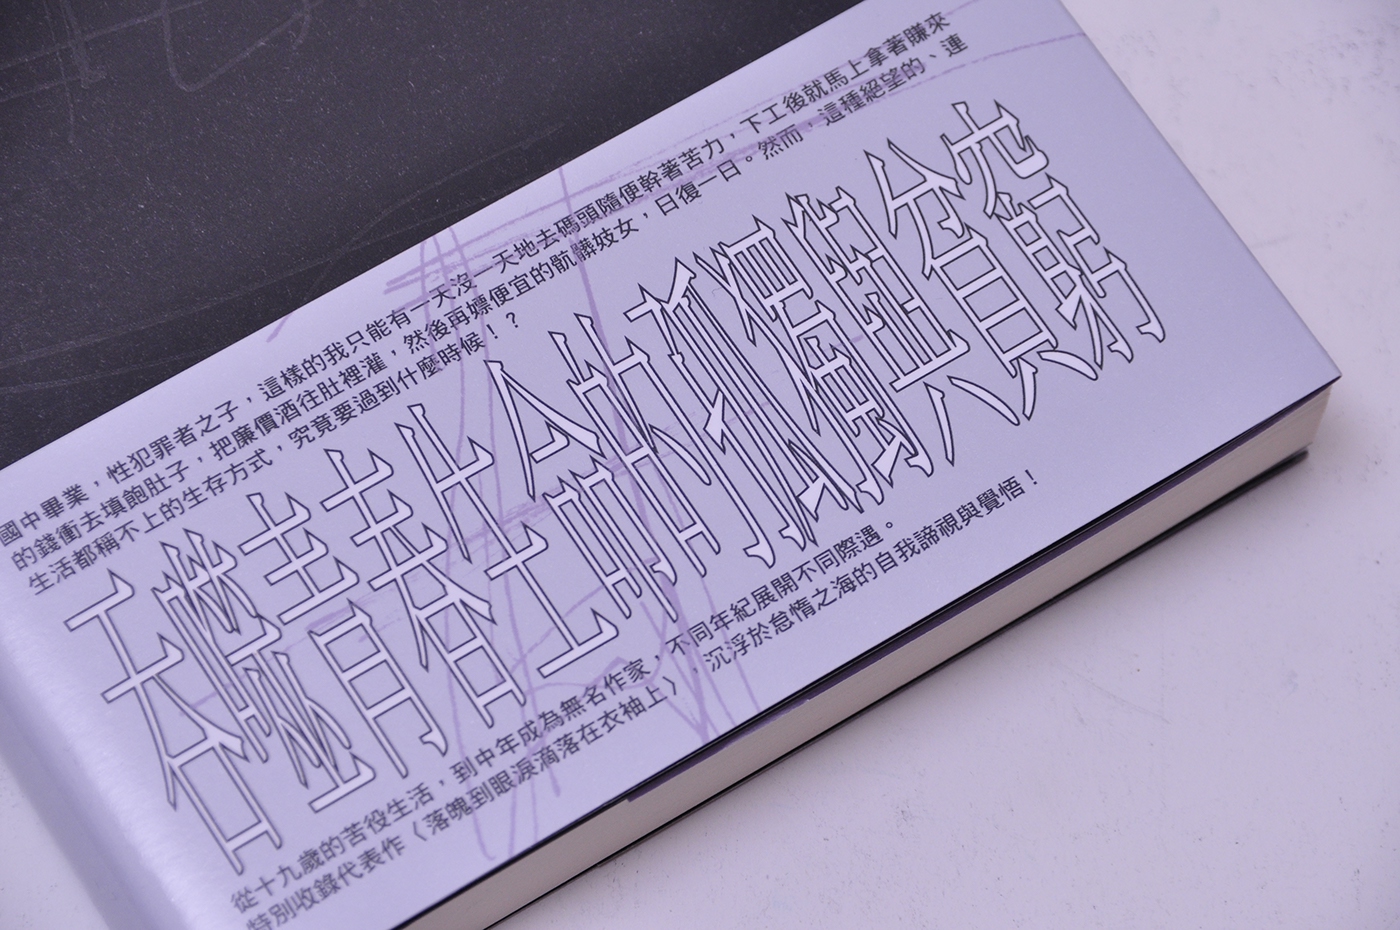 苦役列車 西村賢太 小子 godkidlla bookcoverarts jacketarts graphicdesign